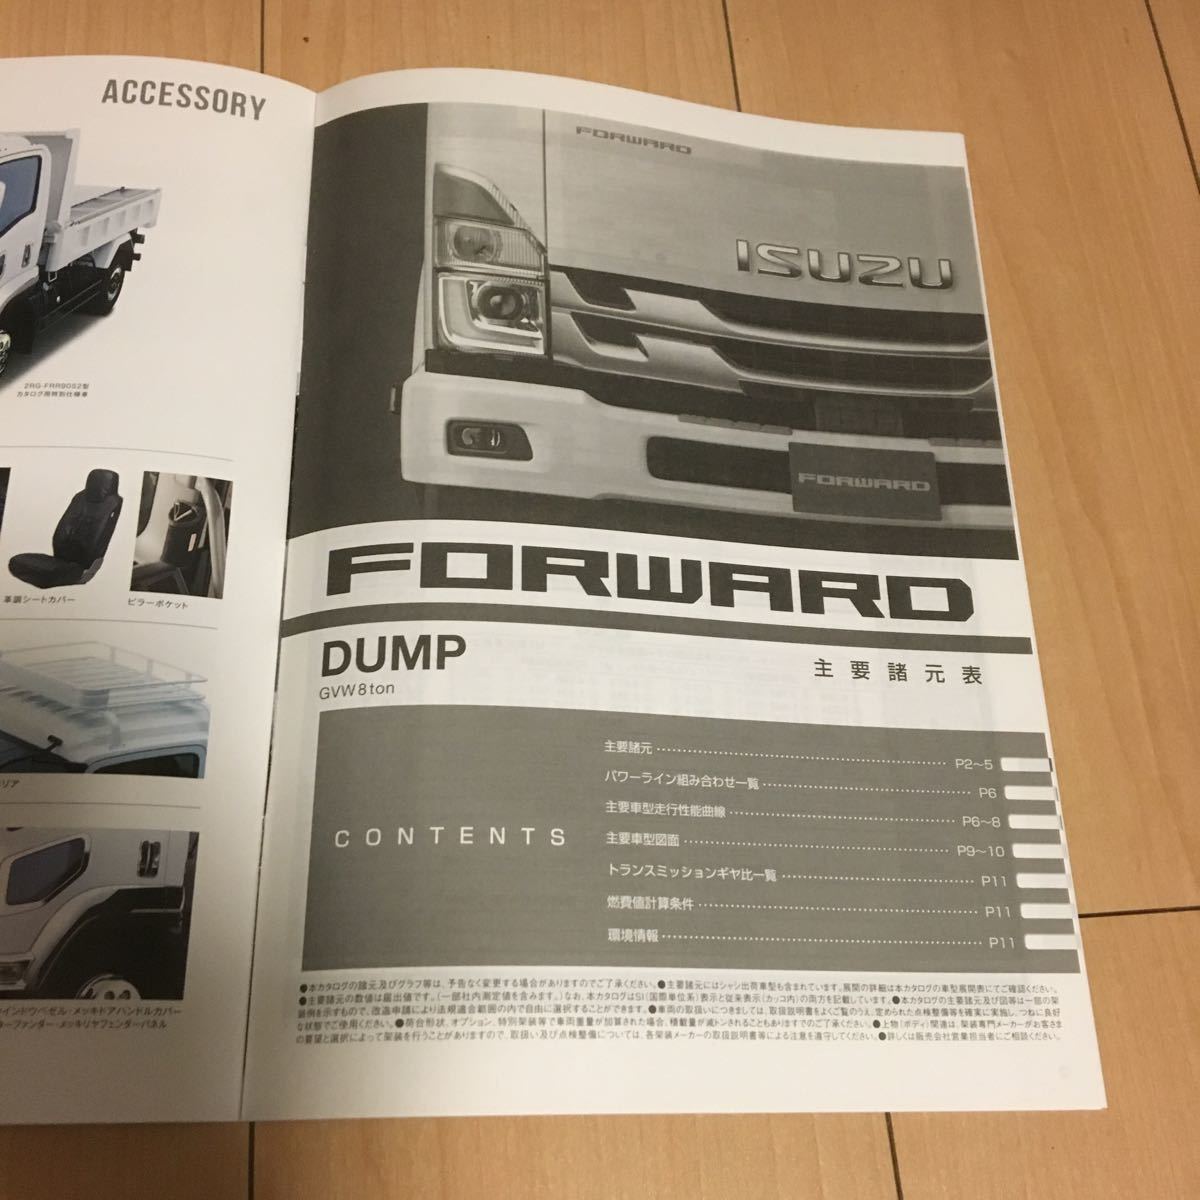 2021年6月版 いすゞ FORWARD DUMP GVW8ton カタログ 23ページ / 主要諸元表 11ページ フォワード ダンプ (0907-3)_画像6